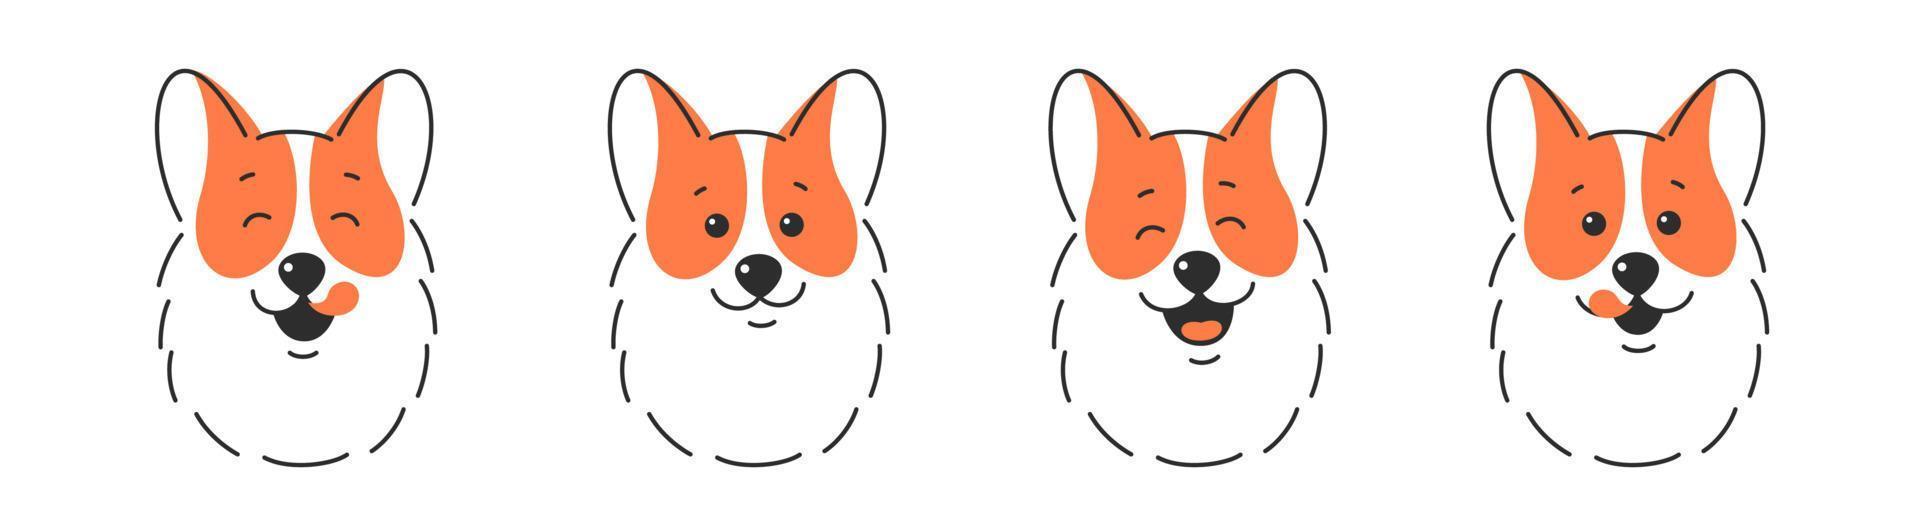 olika hund ansikte. Lycklig hund ansikte med tunga hängande ut, tunga slicka mun. vektor illustration isolerat på vit bakgrund.